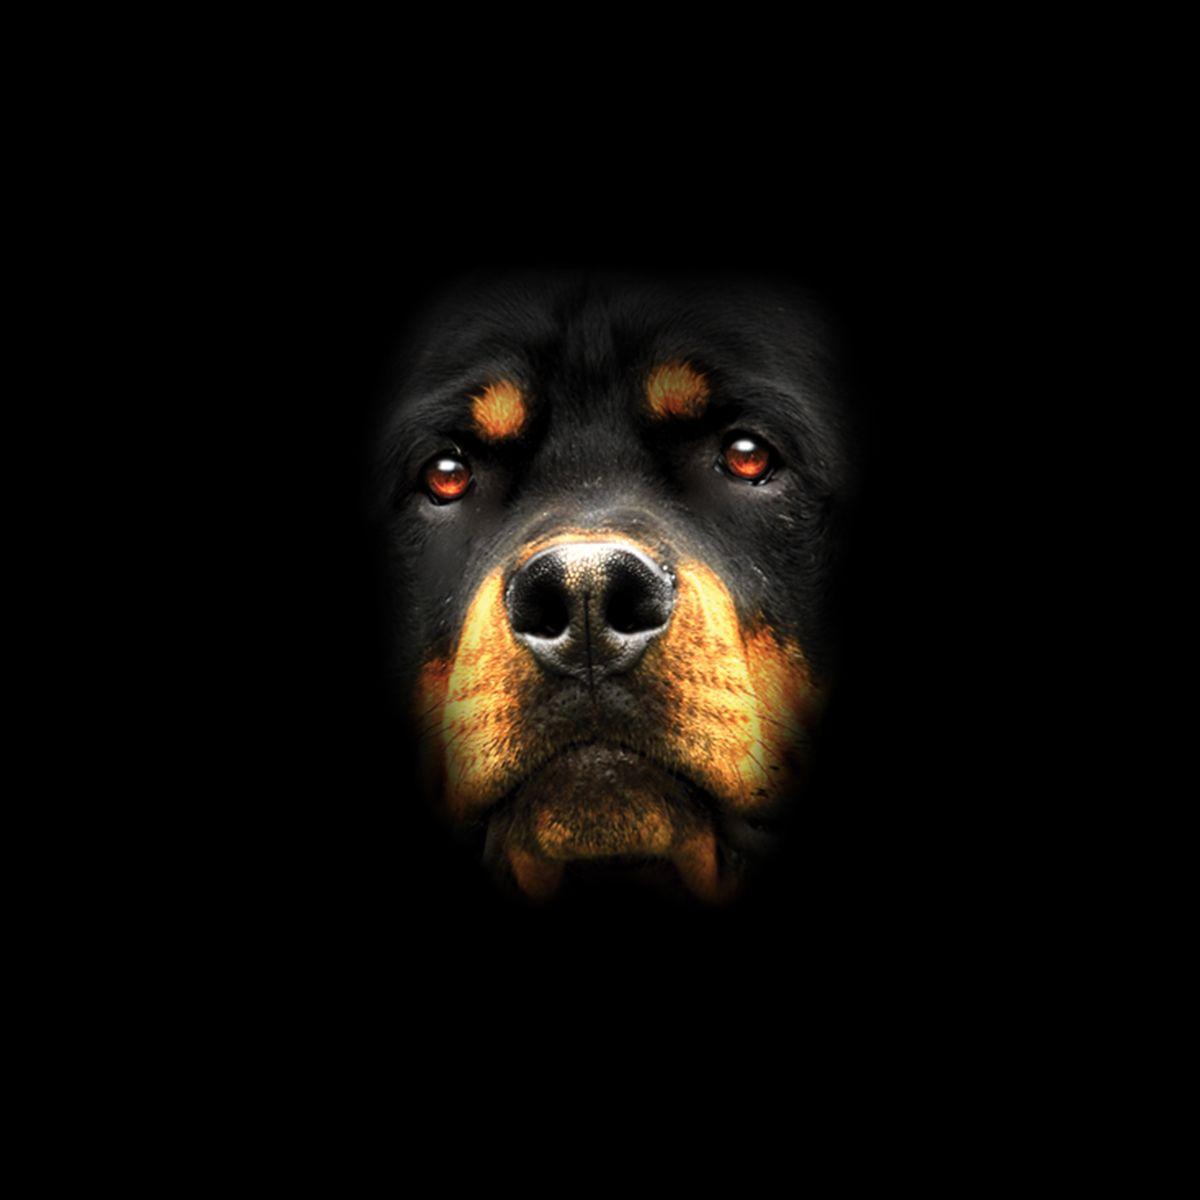 Rottweiler Logo - Details About Rottweiler Face Dog Animals Men T Shirt XS 5XL New